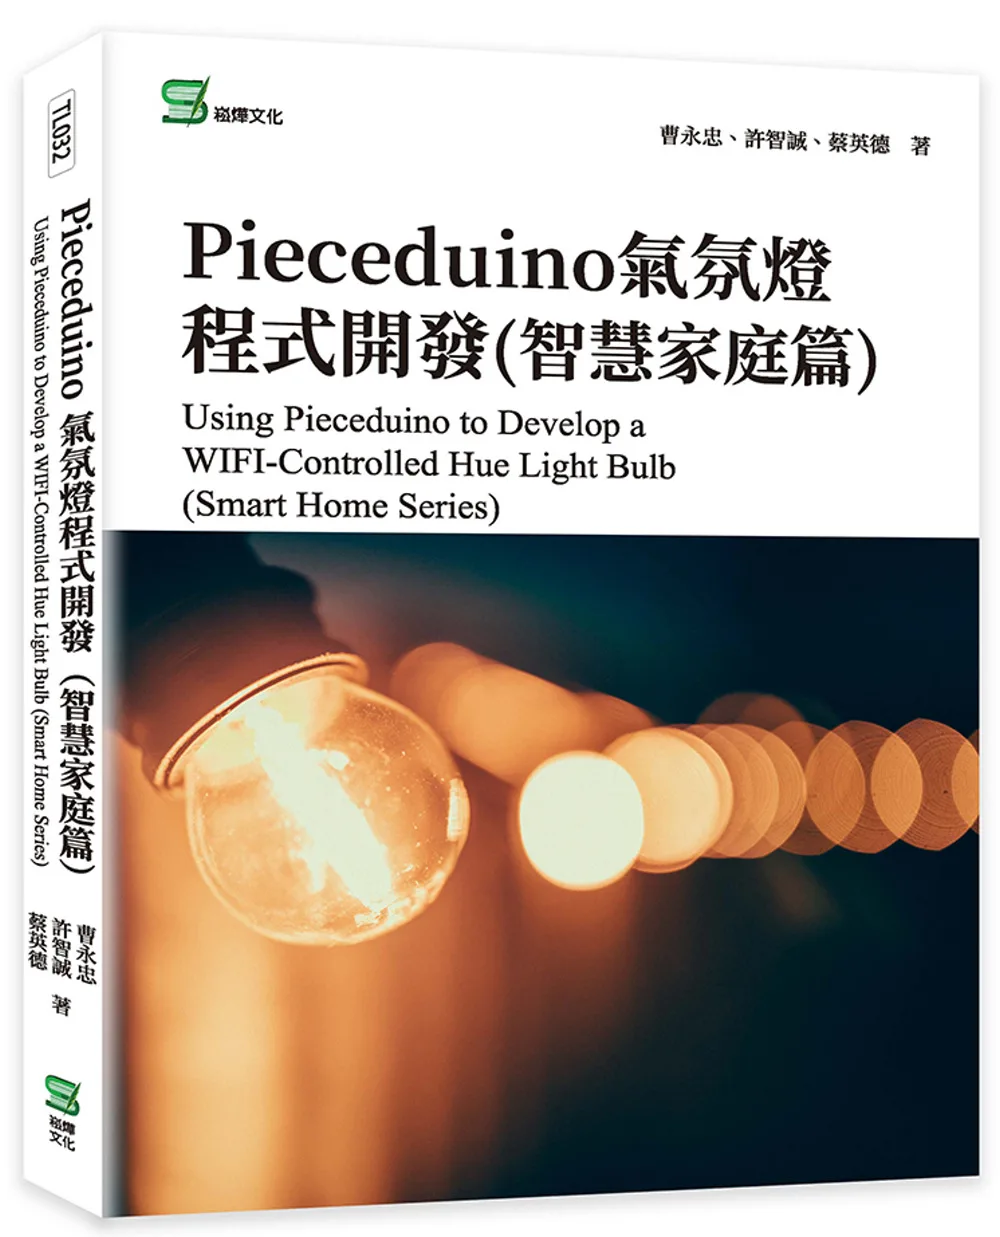 Pieceduino氣氛燈程式開發(智慧家庭篇)